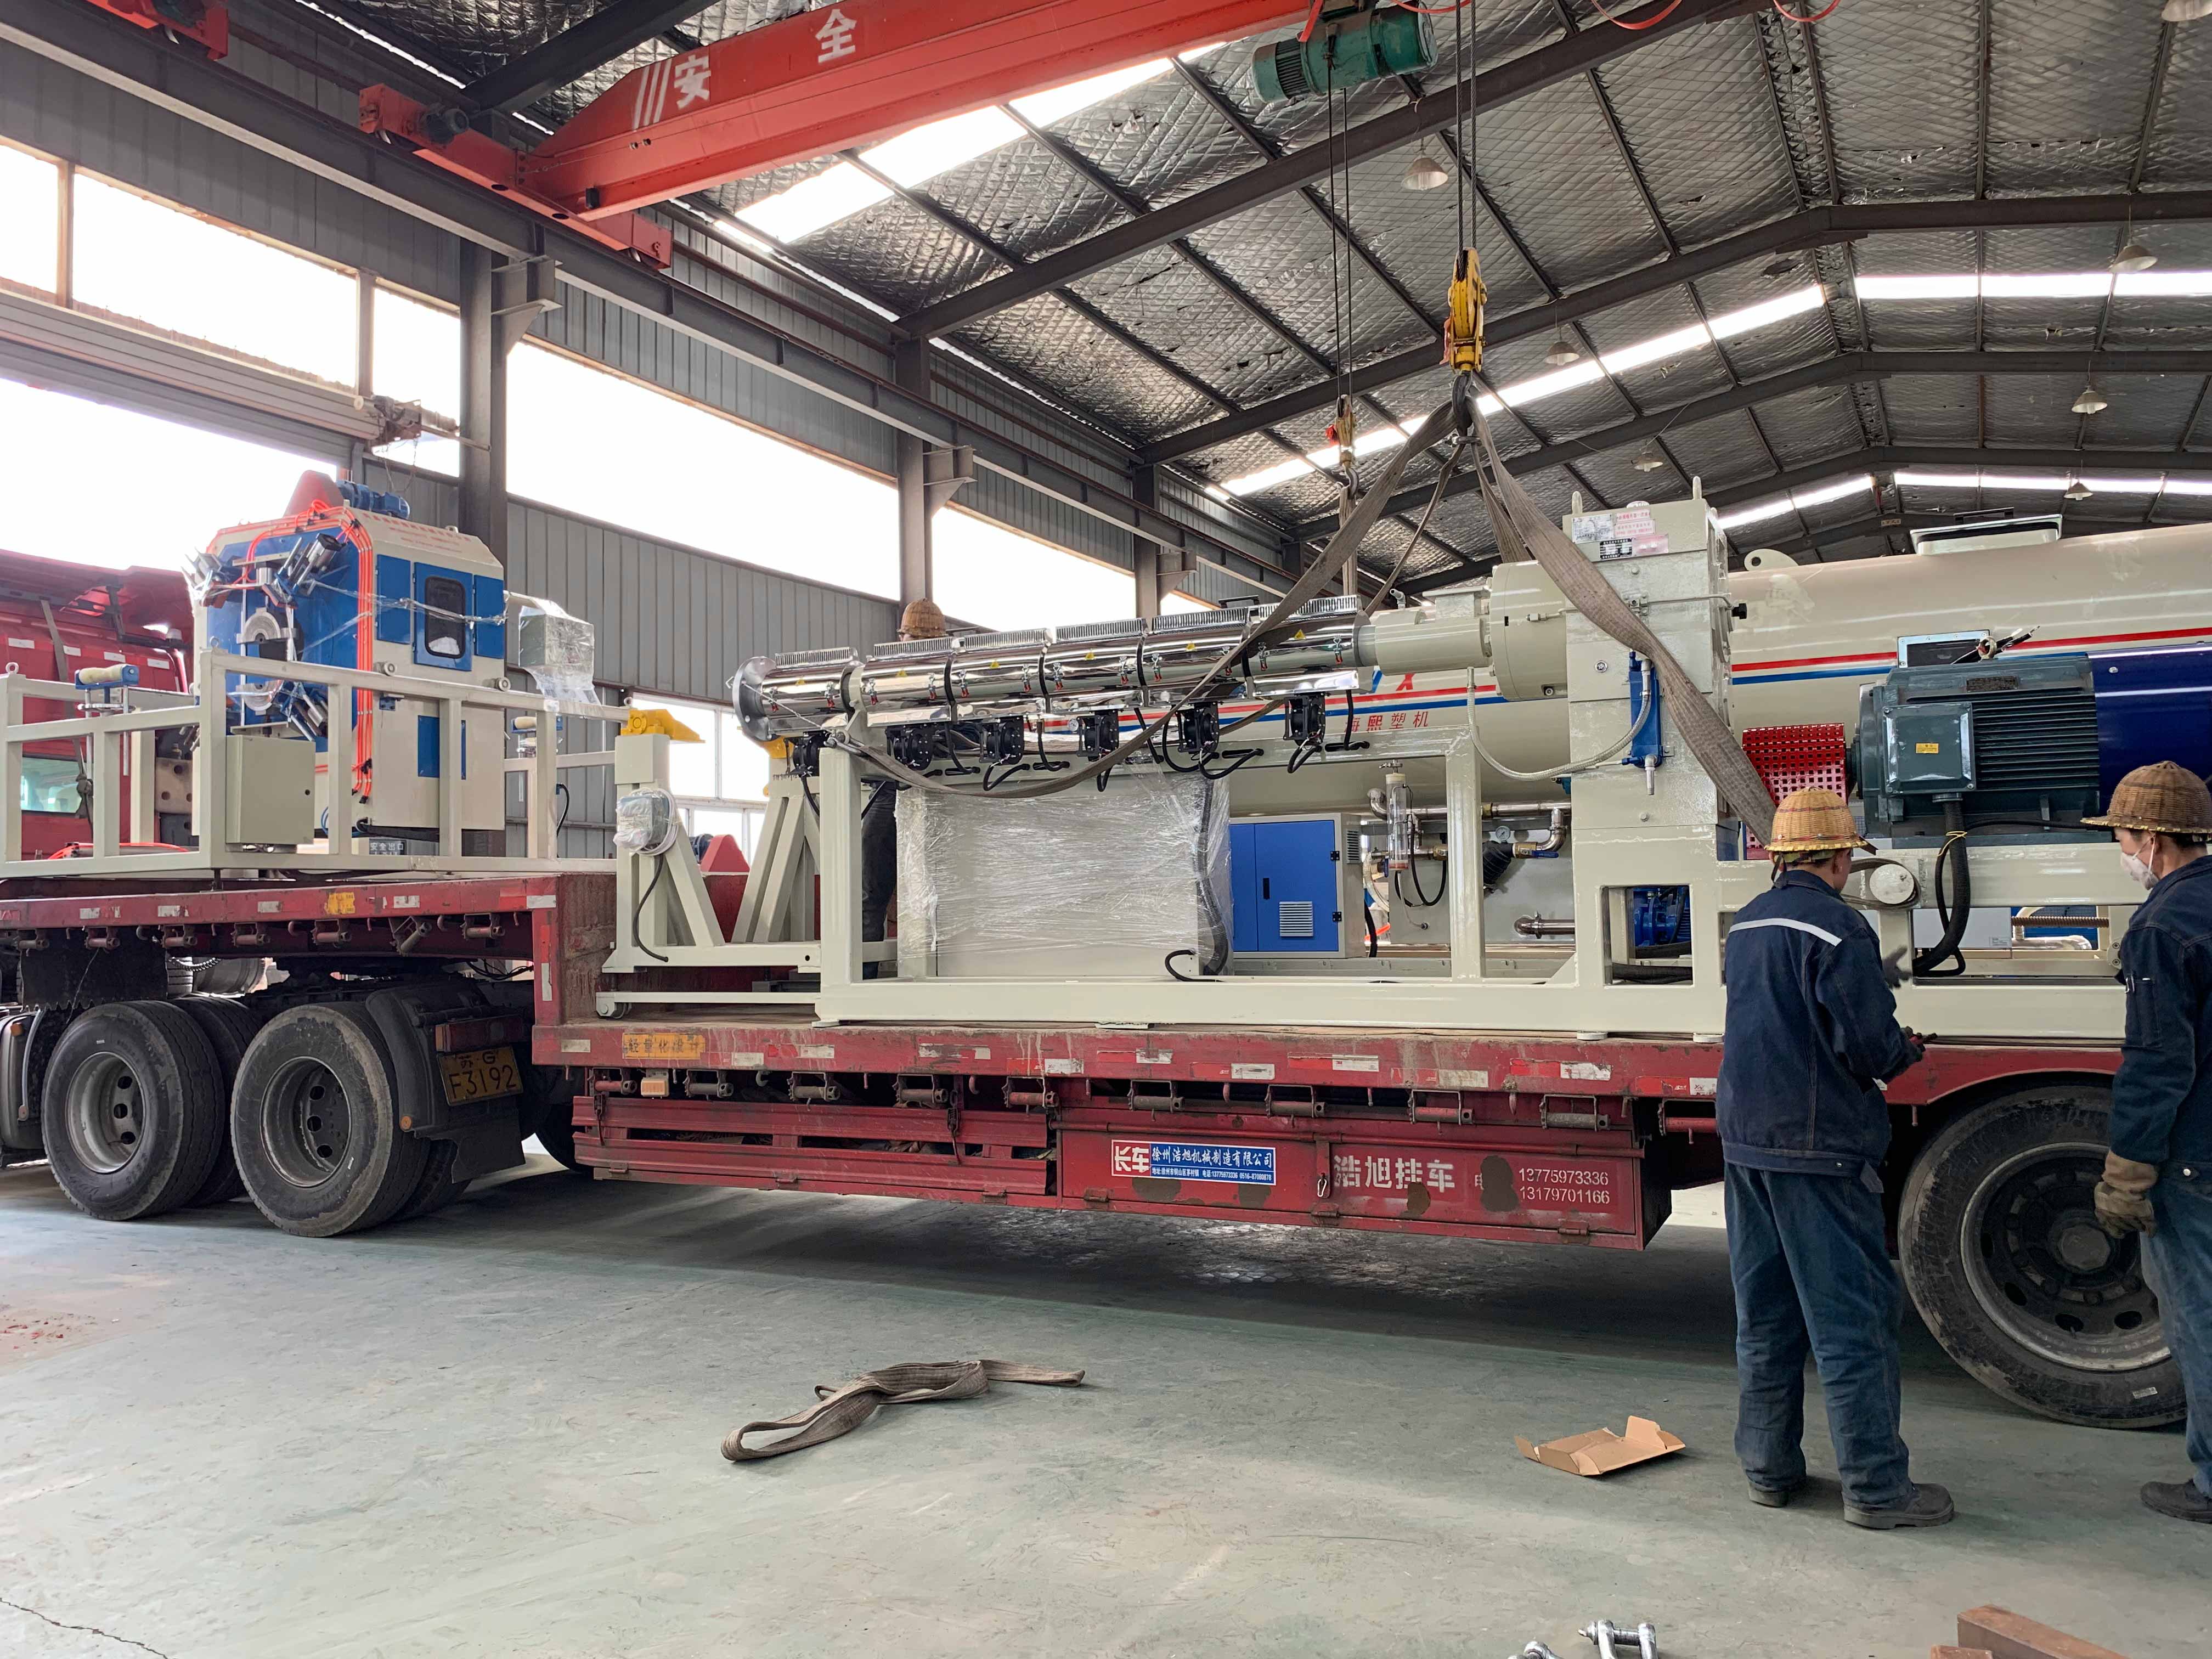 Baotou wan long heng run insulation engineering co